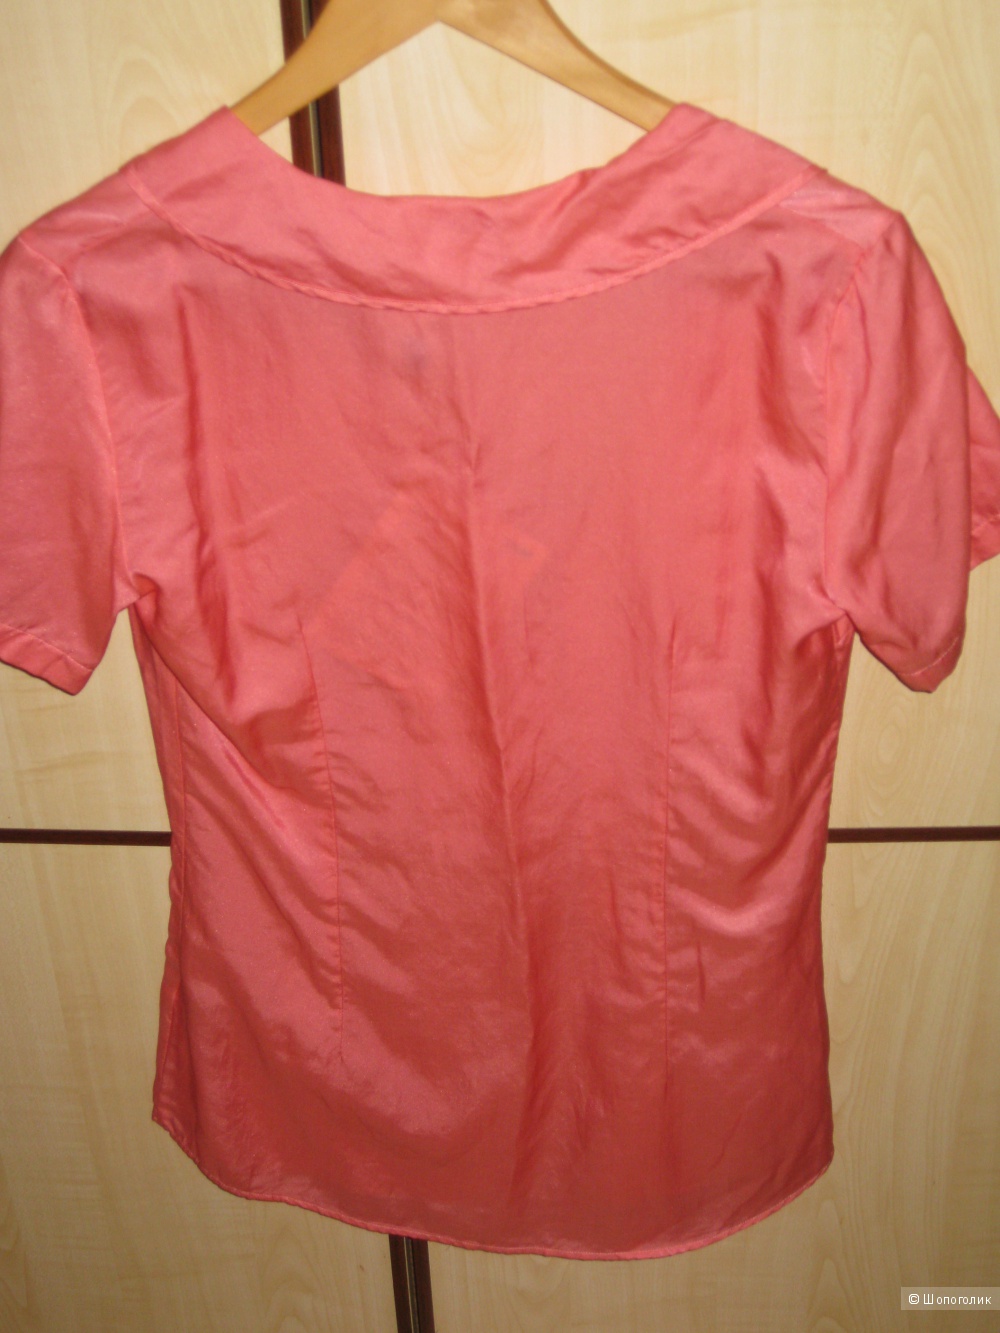 Новая блузка Aglini, размер 42-44 (росс.), хлопок + шелк